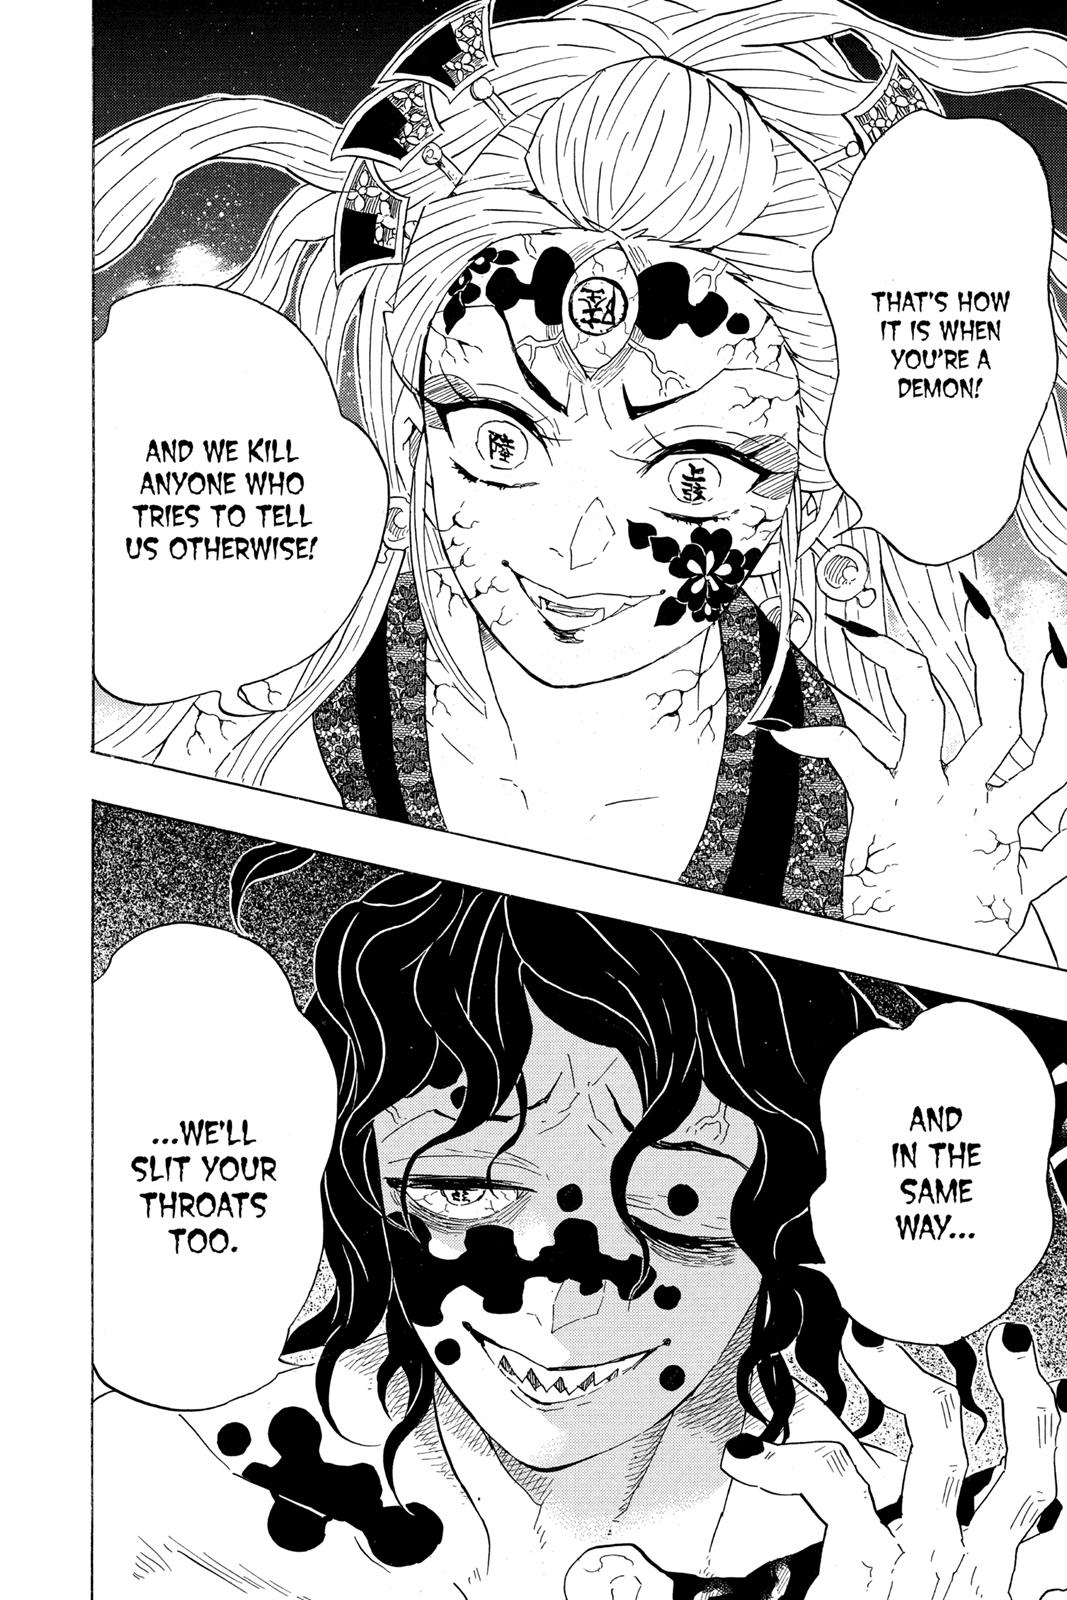 Demon Slayer Manga Manga Chapter - 88 - image 2